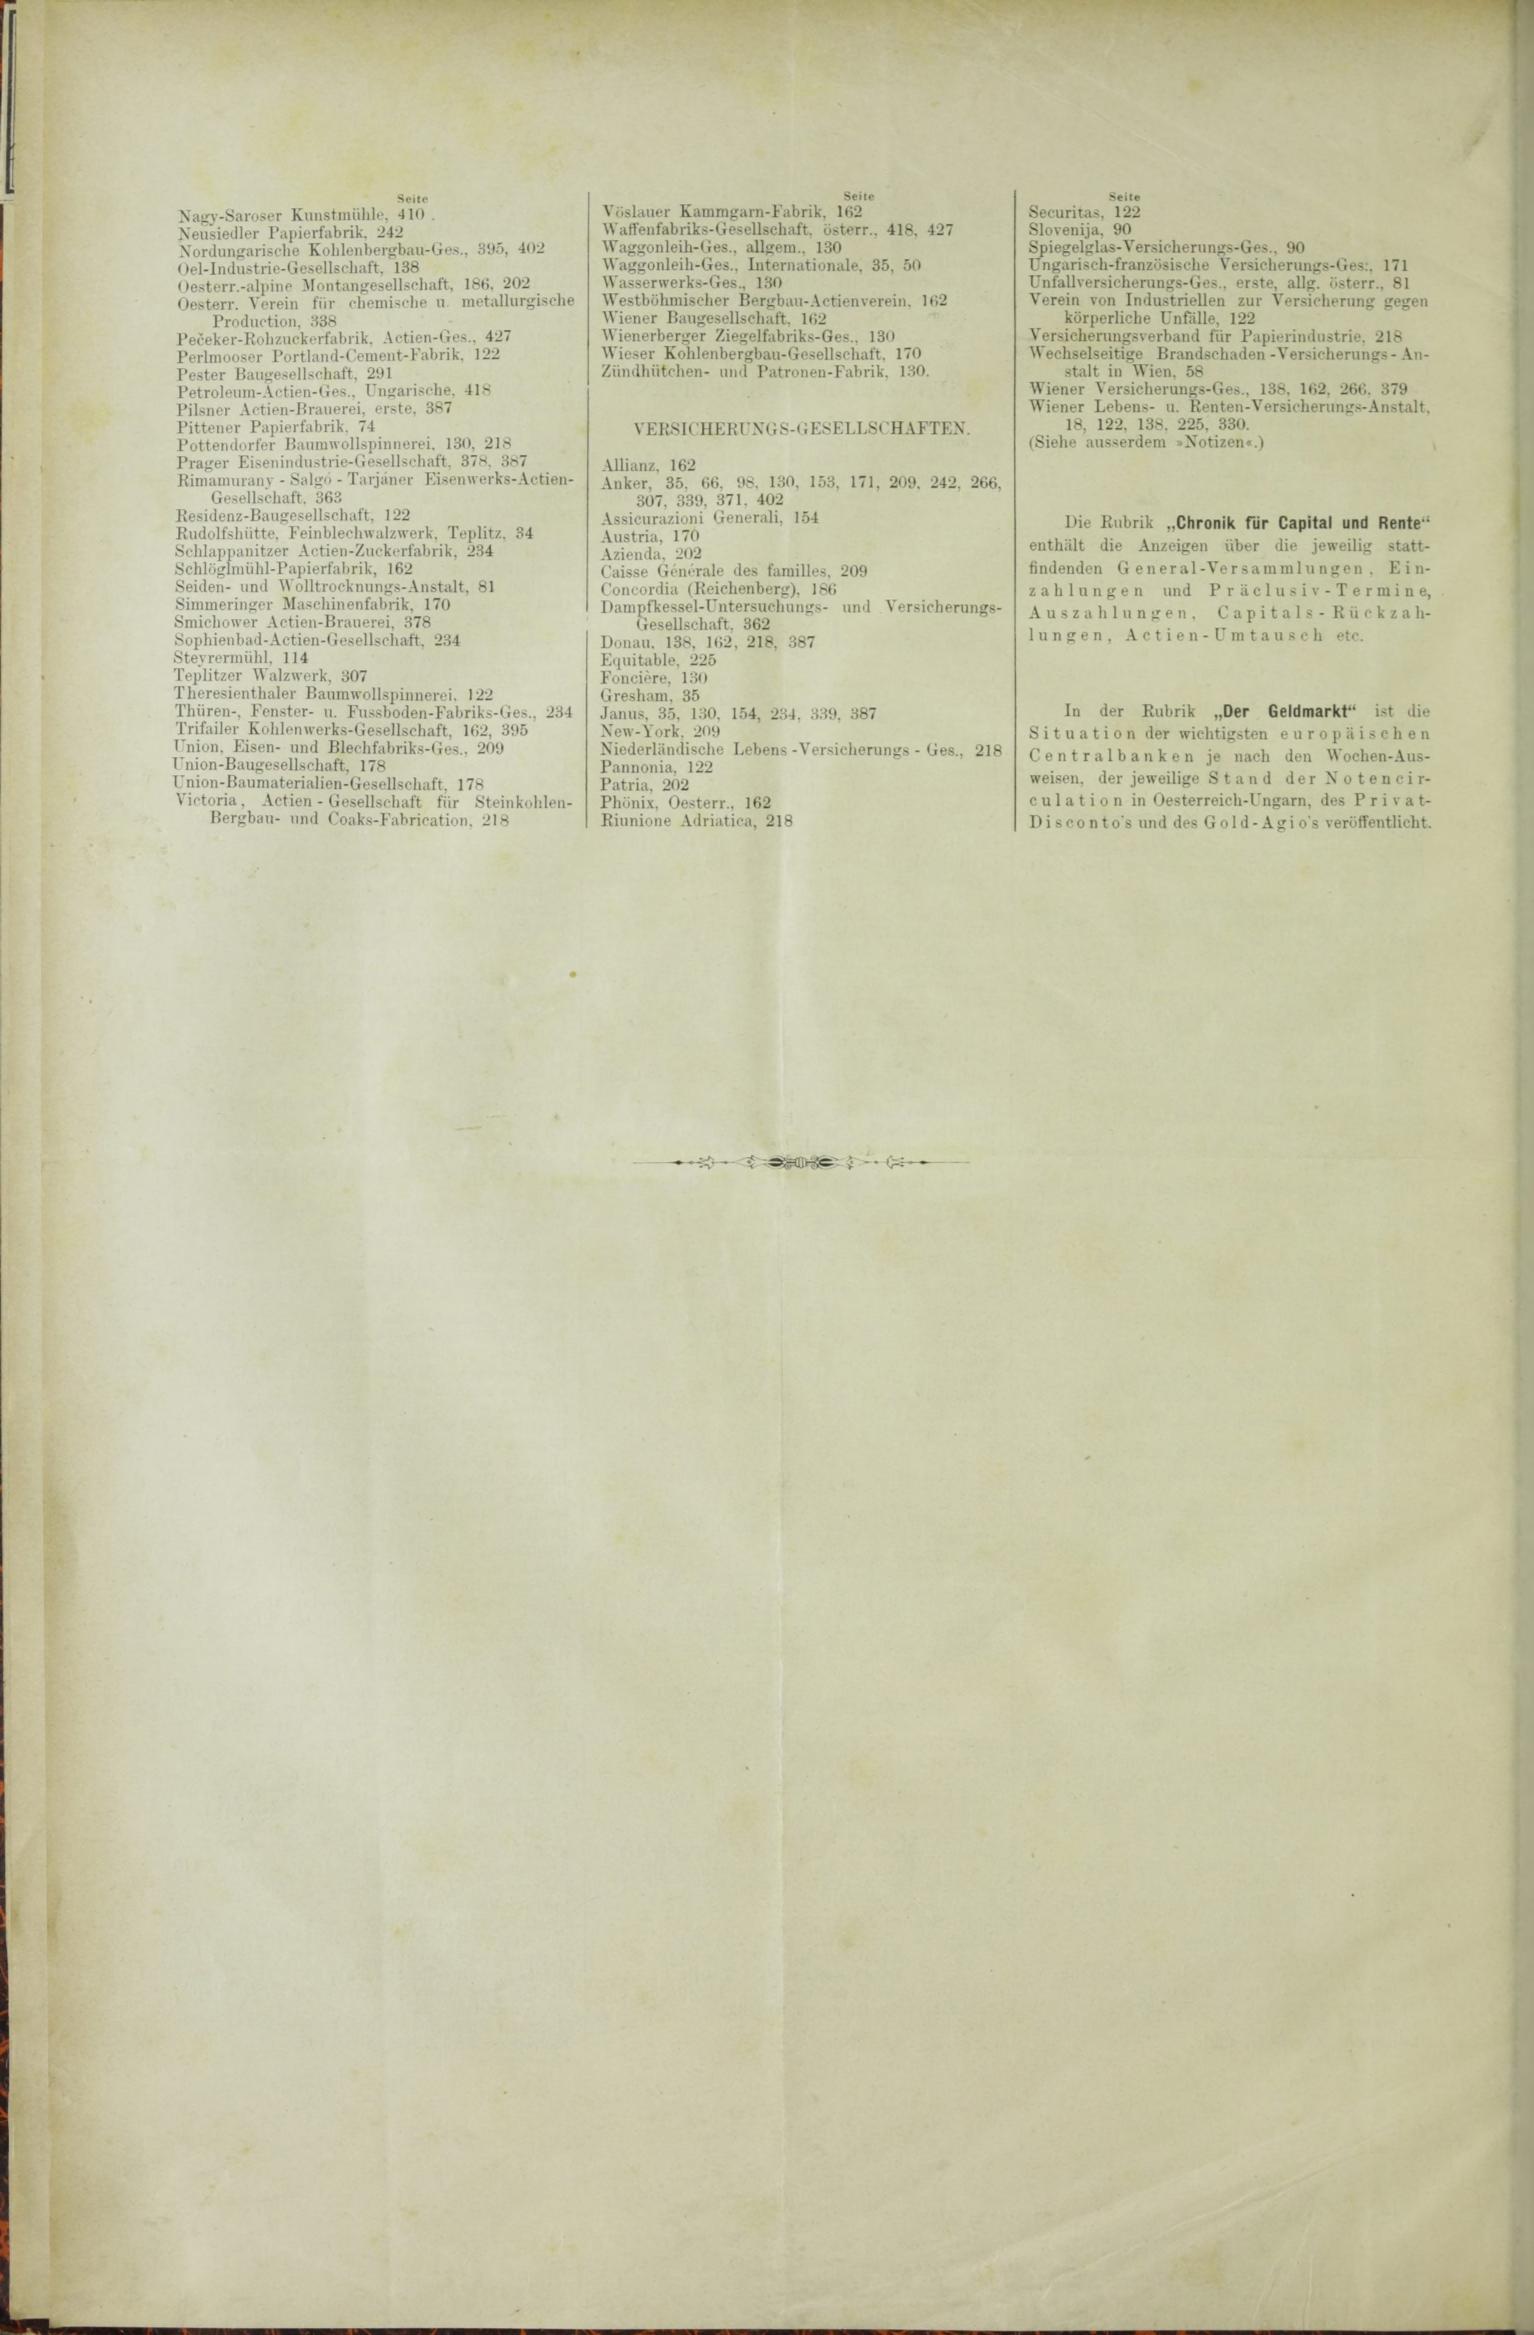 Der Tresor 15.10.1885 - Seite 12